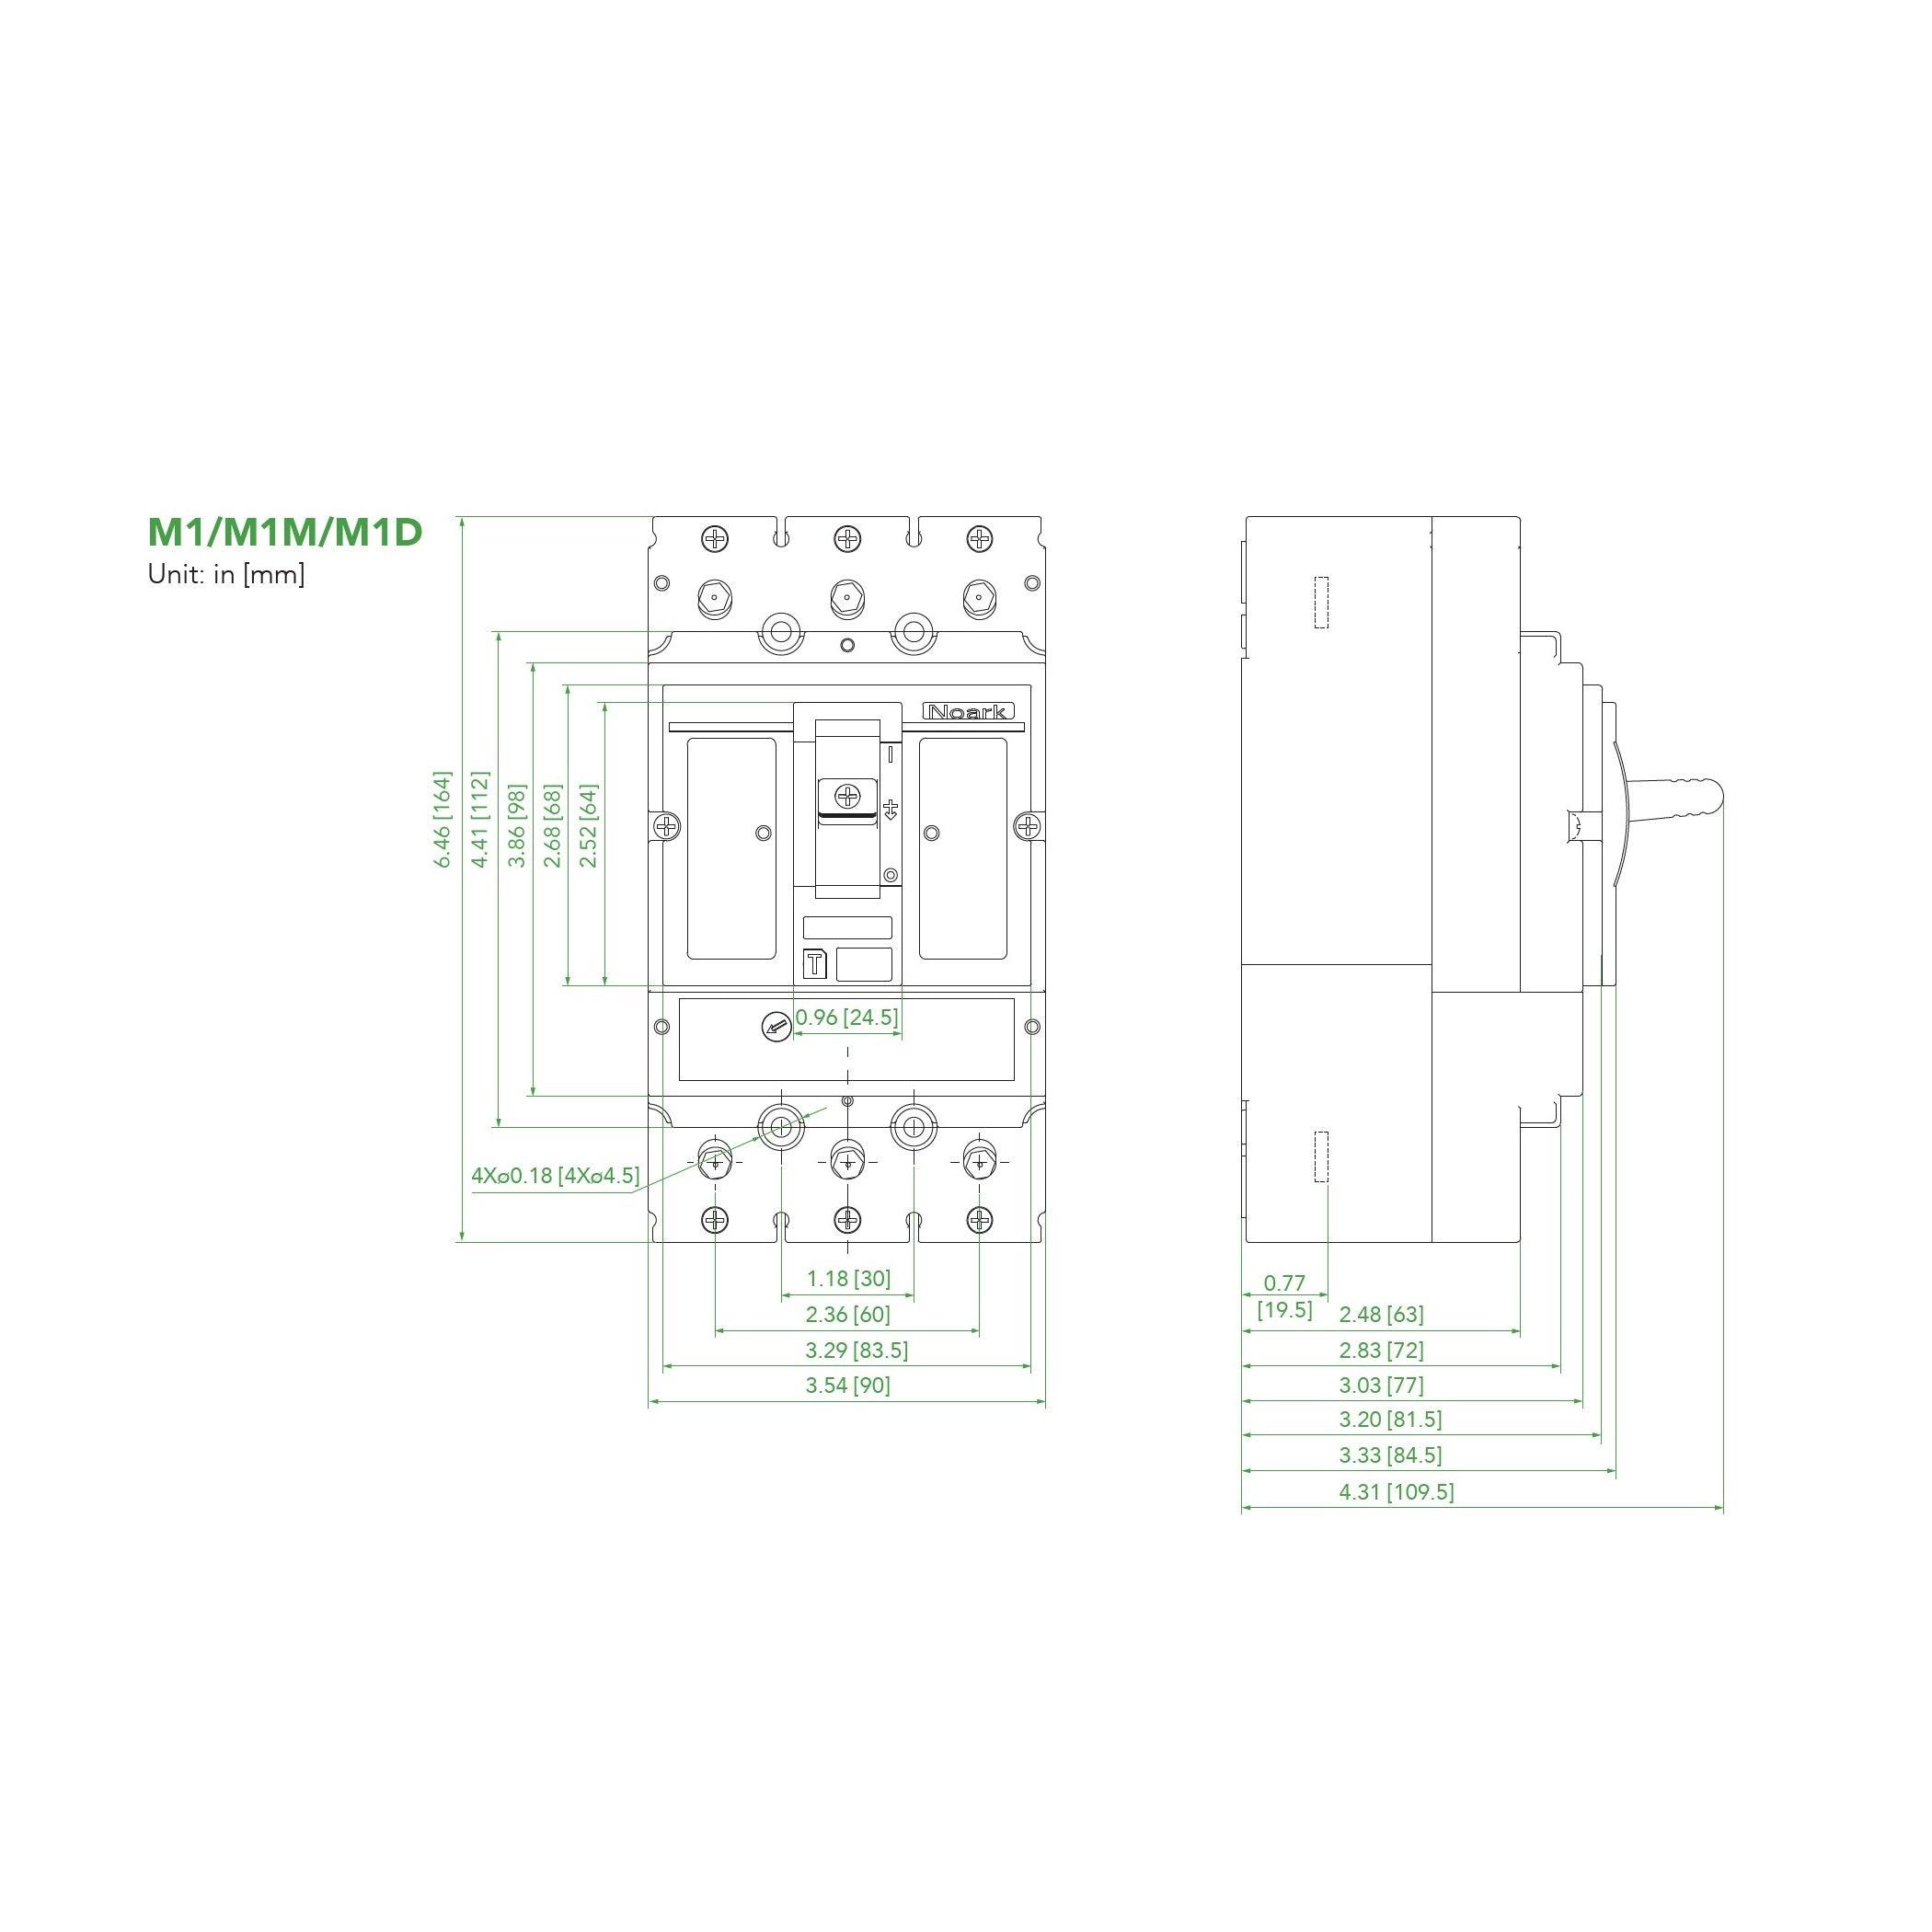 NOARK® Molded Case Circuit Breaker 150A, 3P IC Class H | M1H150T3L - Forces Inc